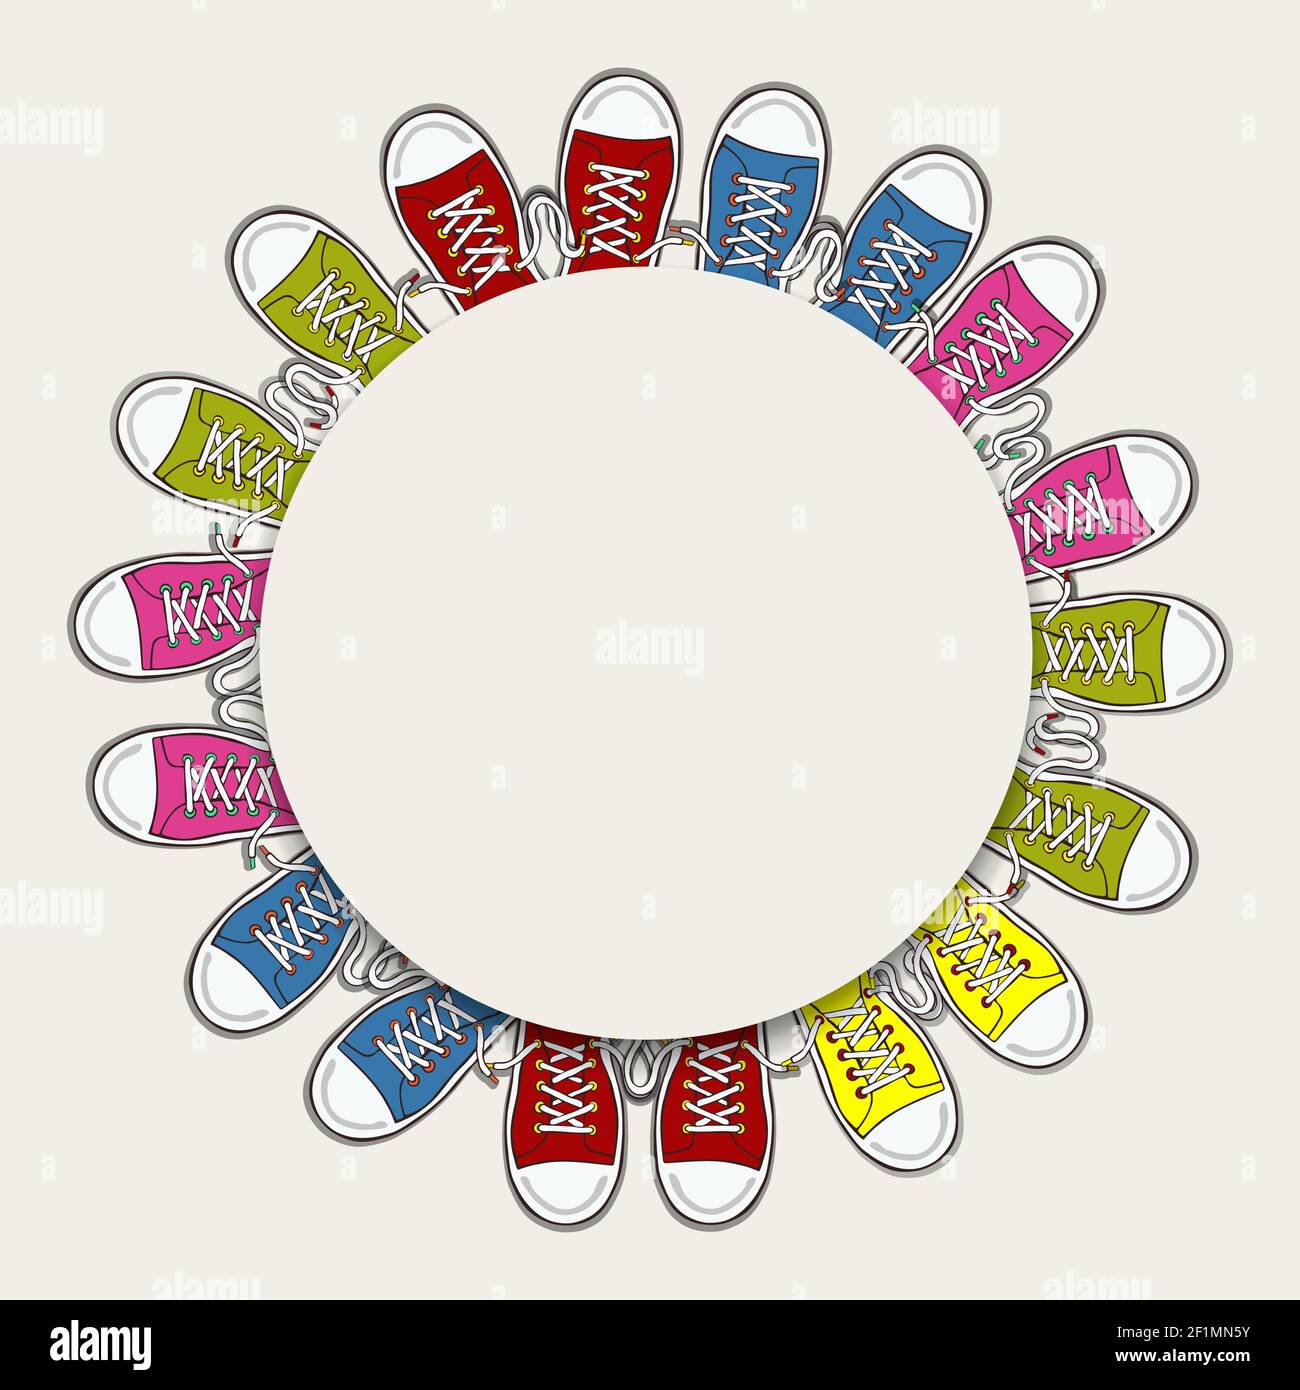 Leere weiße Kreis Rahmen mit bunten Sneaker Schuhe für Teenager Mode Konzept oder Kinder Schuhdesign auf isoliertem Hintergrund. Stock Vektor